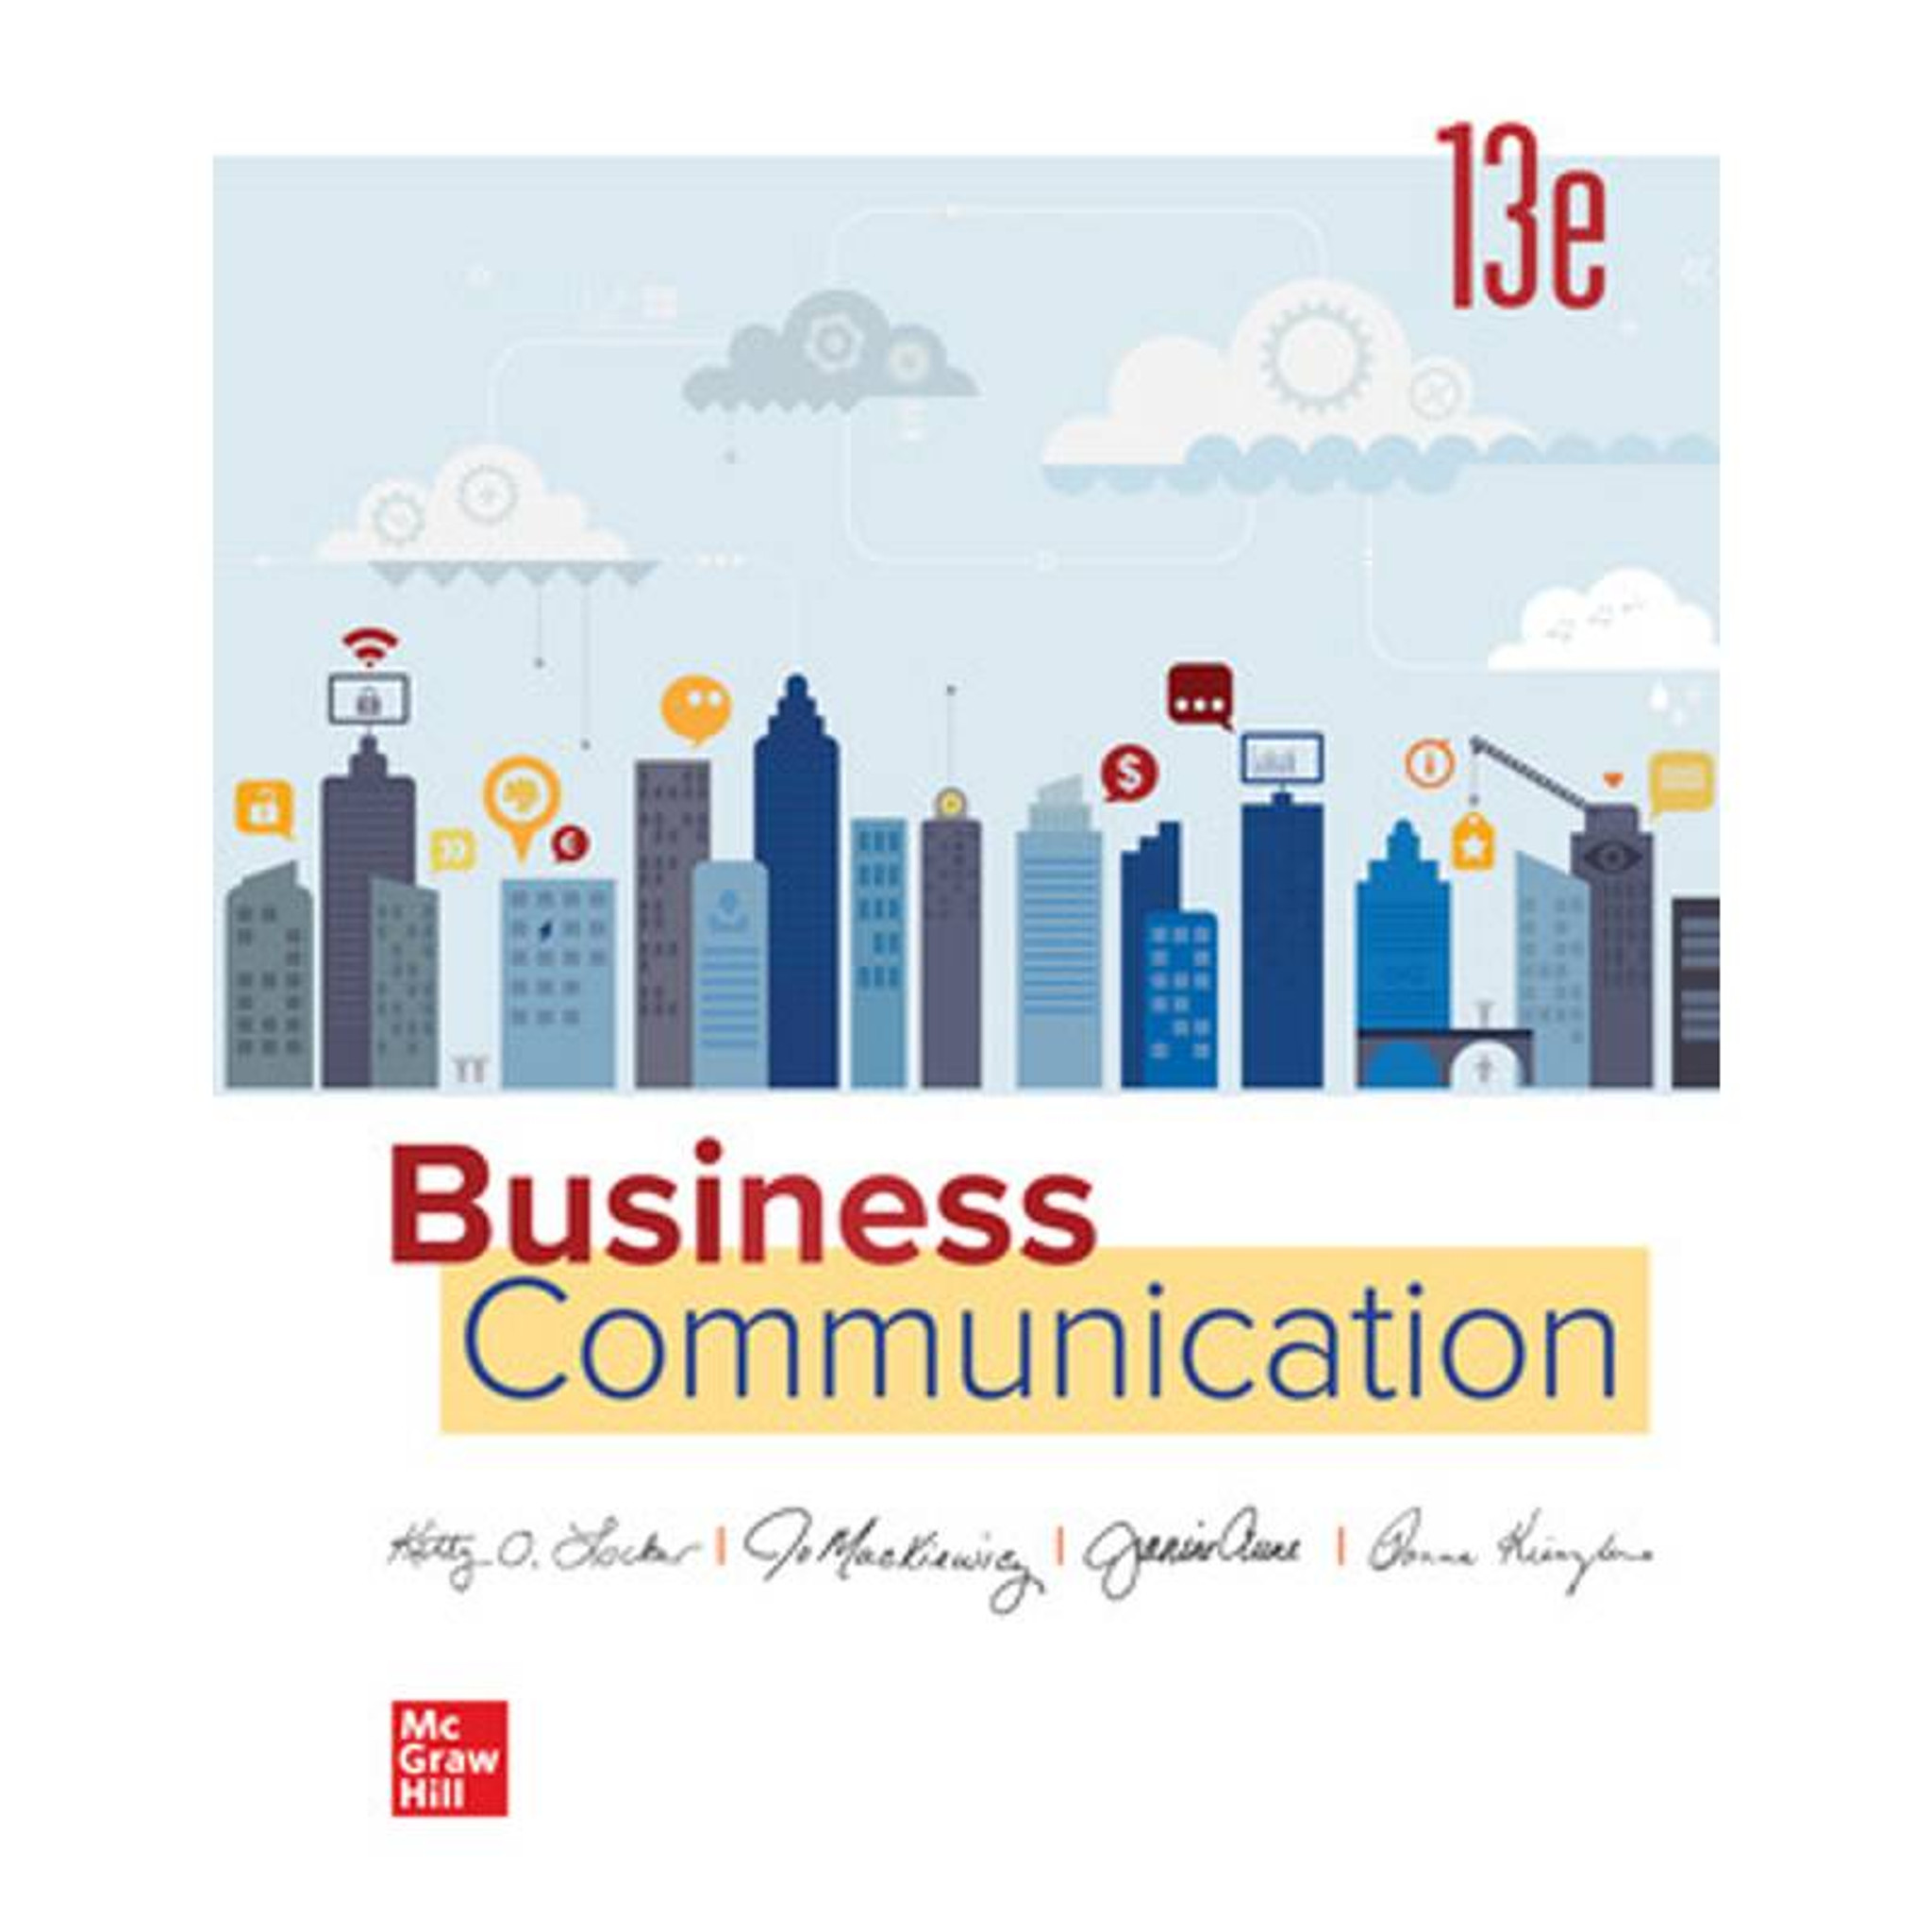 Estée Lauder Companies (Clinique & Lab Series) - Assistant Communications  Manager - DIARY directory